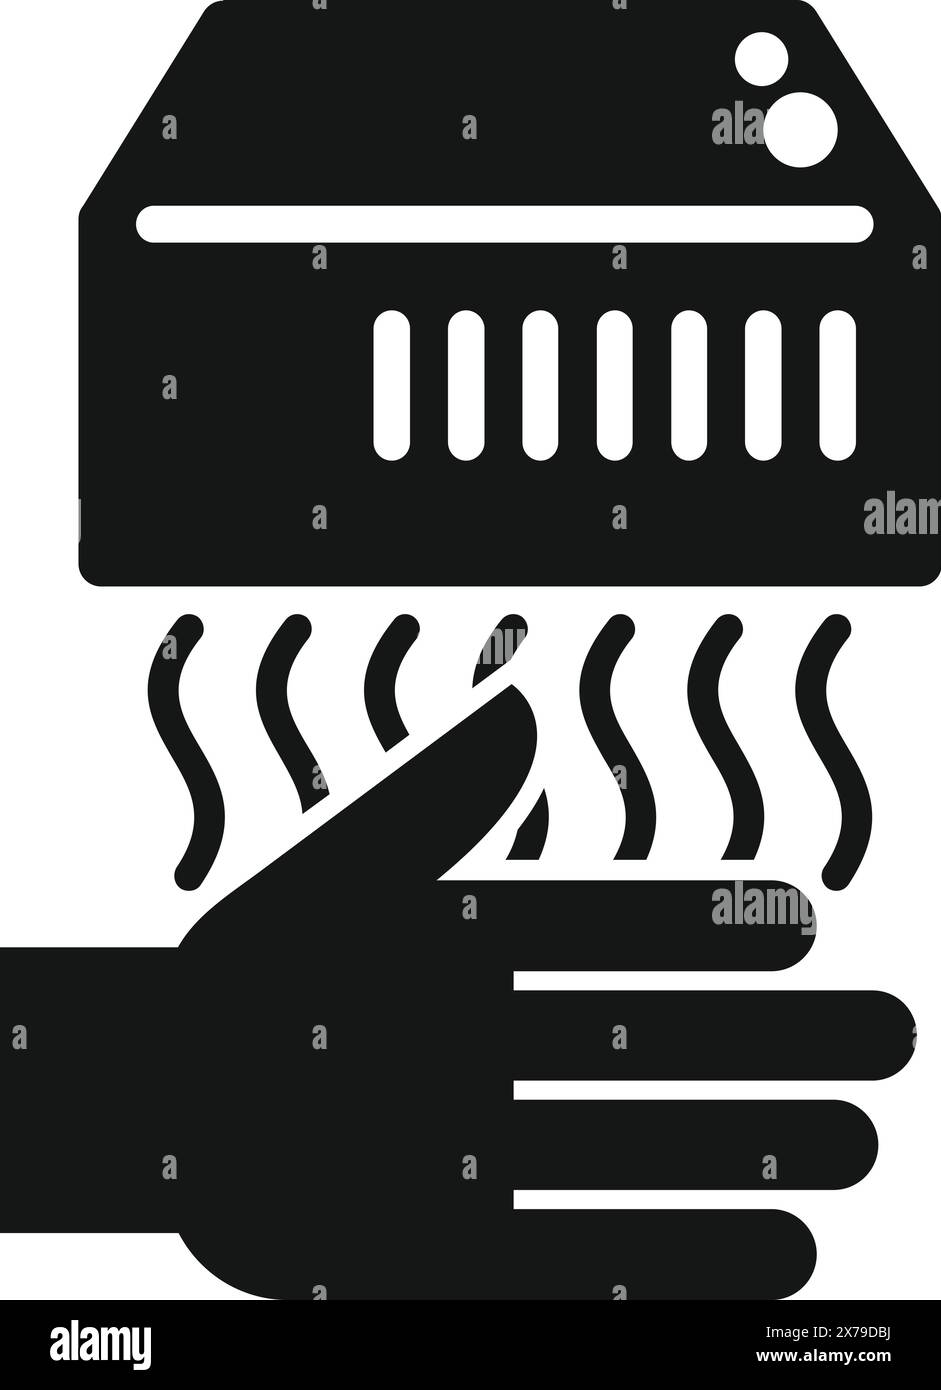 Icône vectorielle noire et blanche d'une main utilisant un séchoir à air automatique, indiquant l'hygiène Illustration de Vecteur